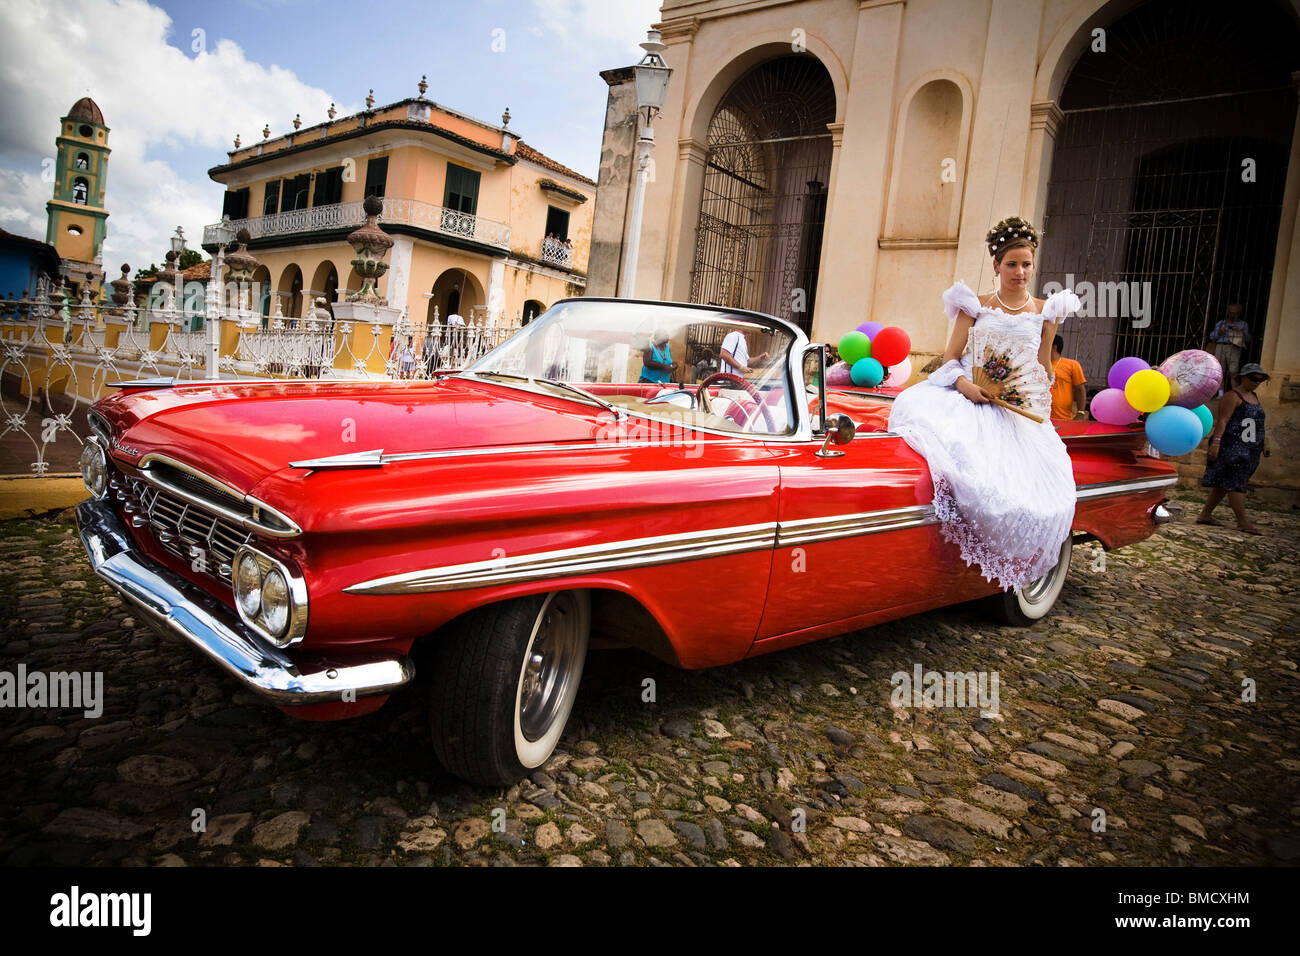 14-year-old girl se sienta en un coche vintage como ella posa para una foto en el día de su fiesta Quinceanera en Trinidad, Cuba Foto de stock